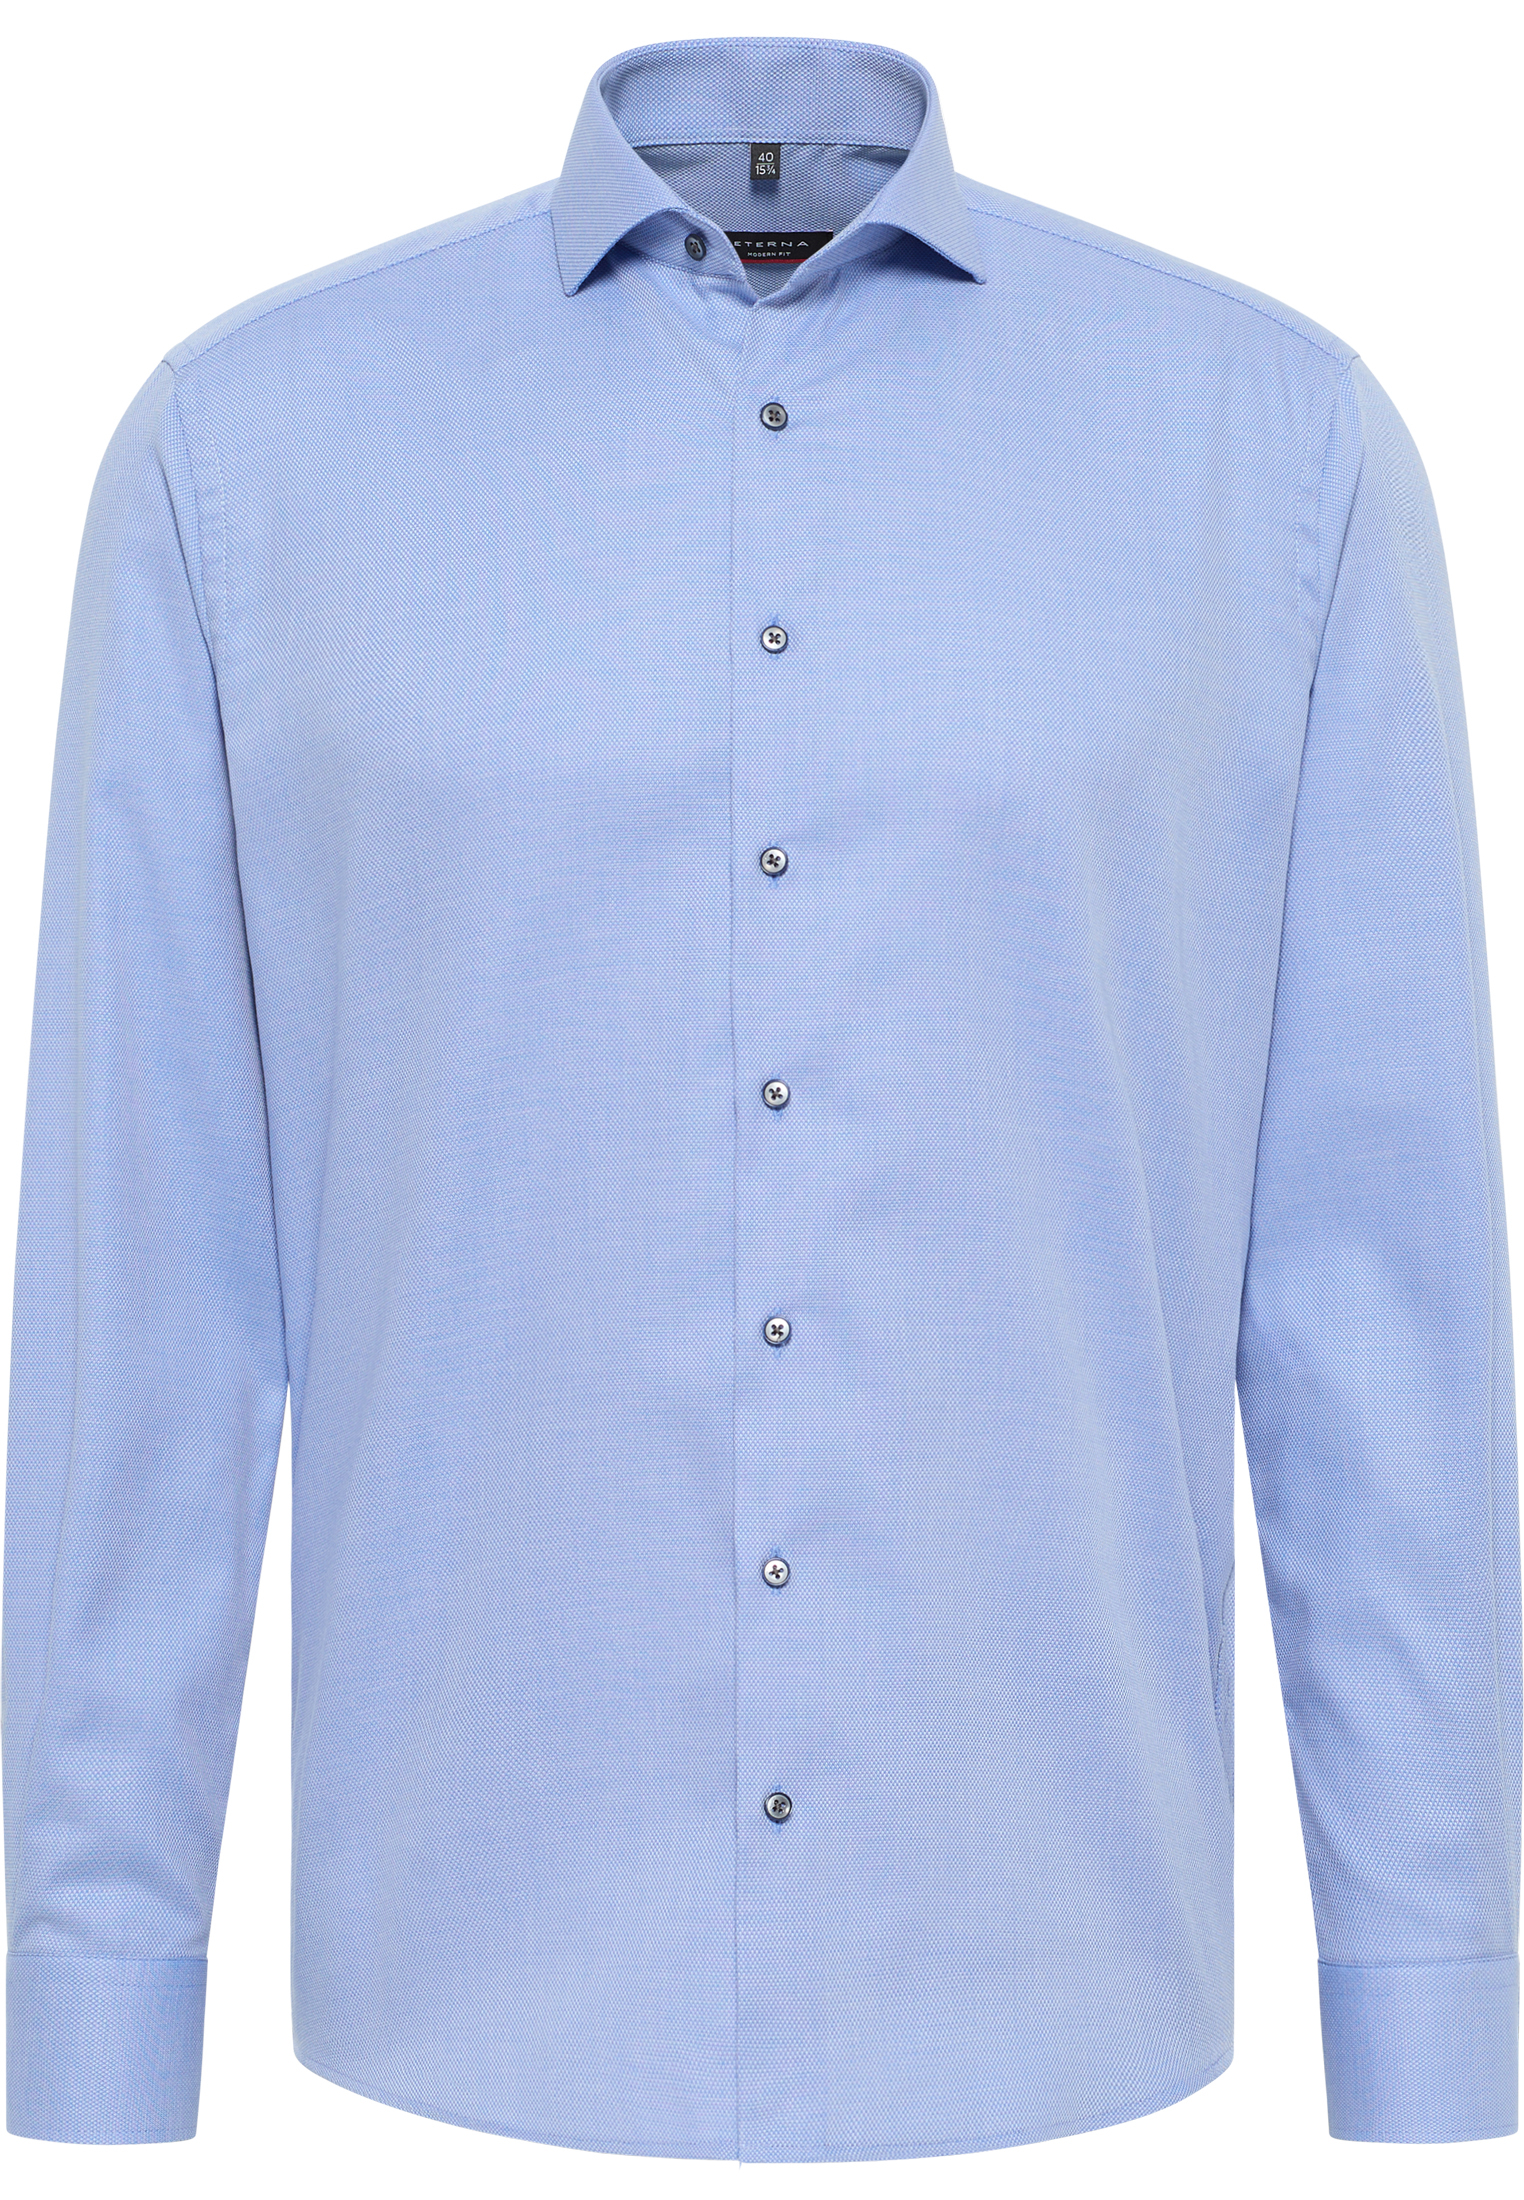 MODERN FIT Overhemd in blauw gestructureerd